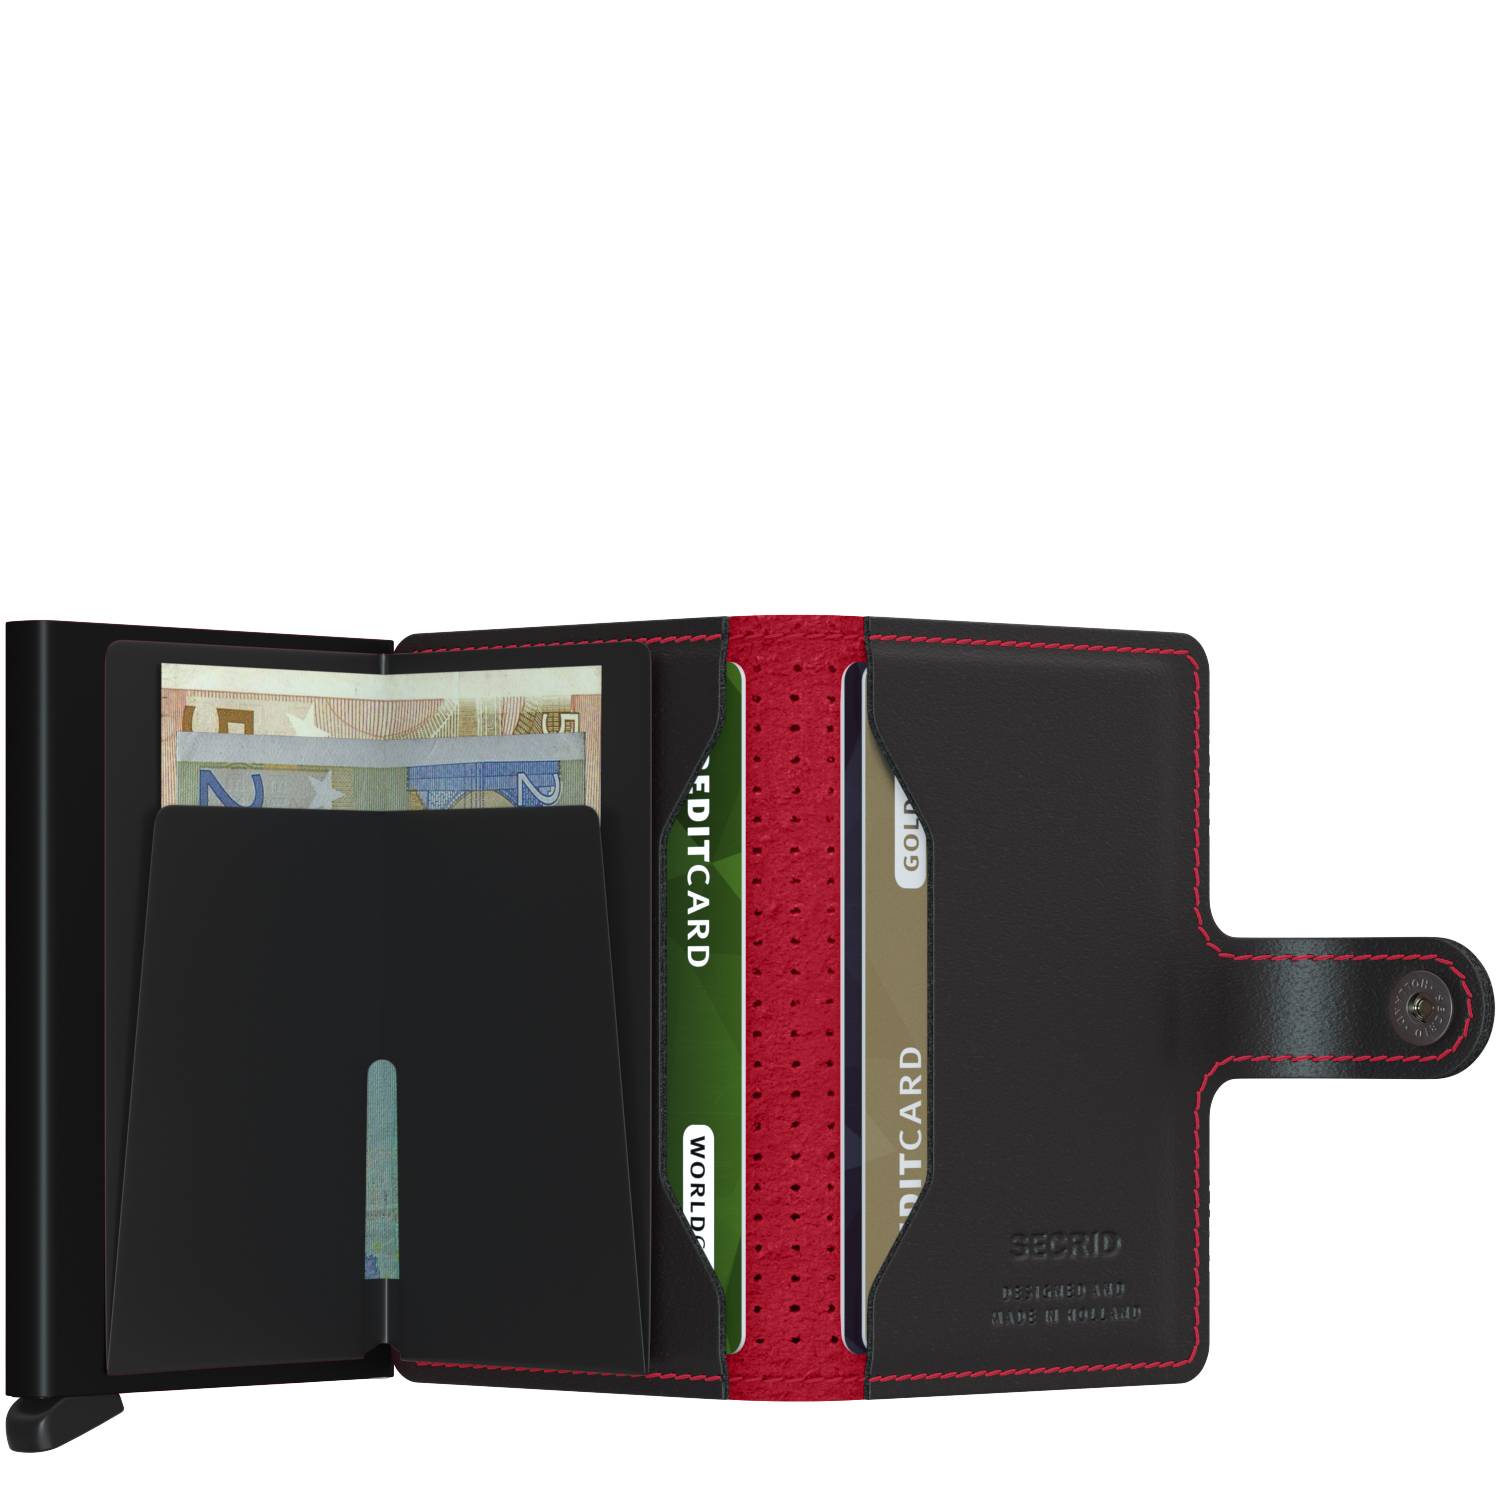 Porte-cartes cuir perforé Secrid Miniwallet MPF Black Red (Noir/Rouge) rangements internes